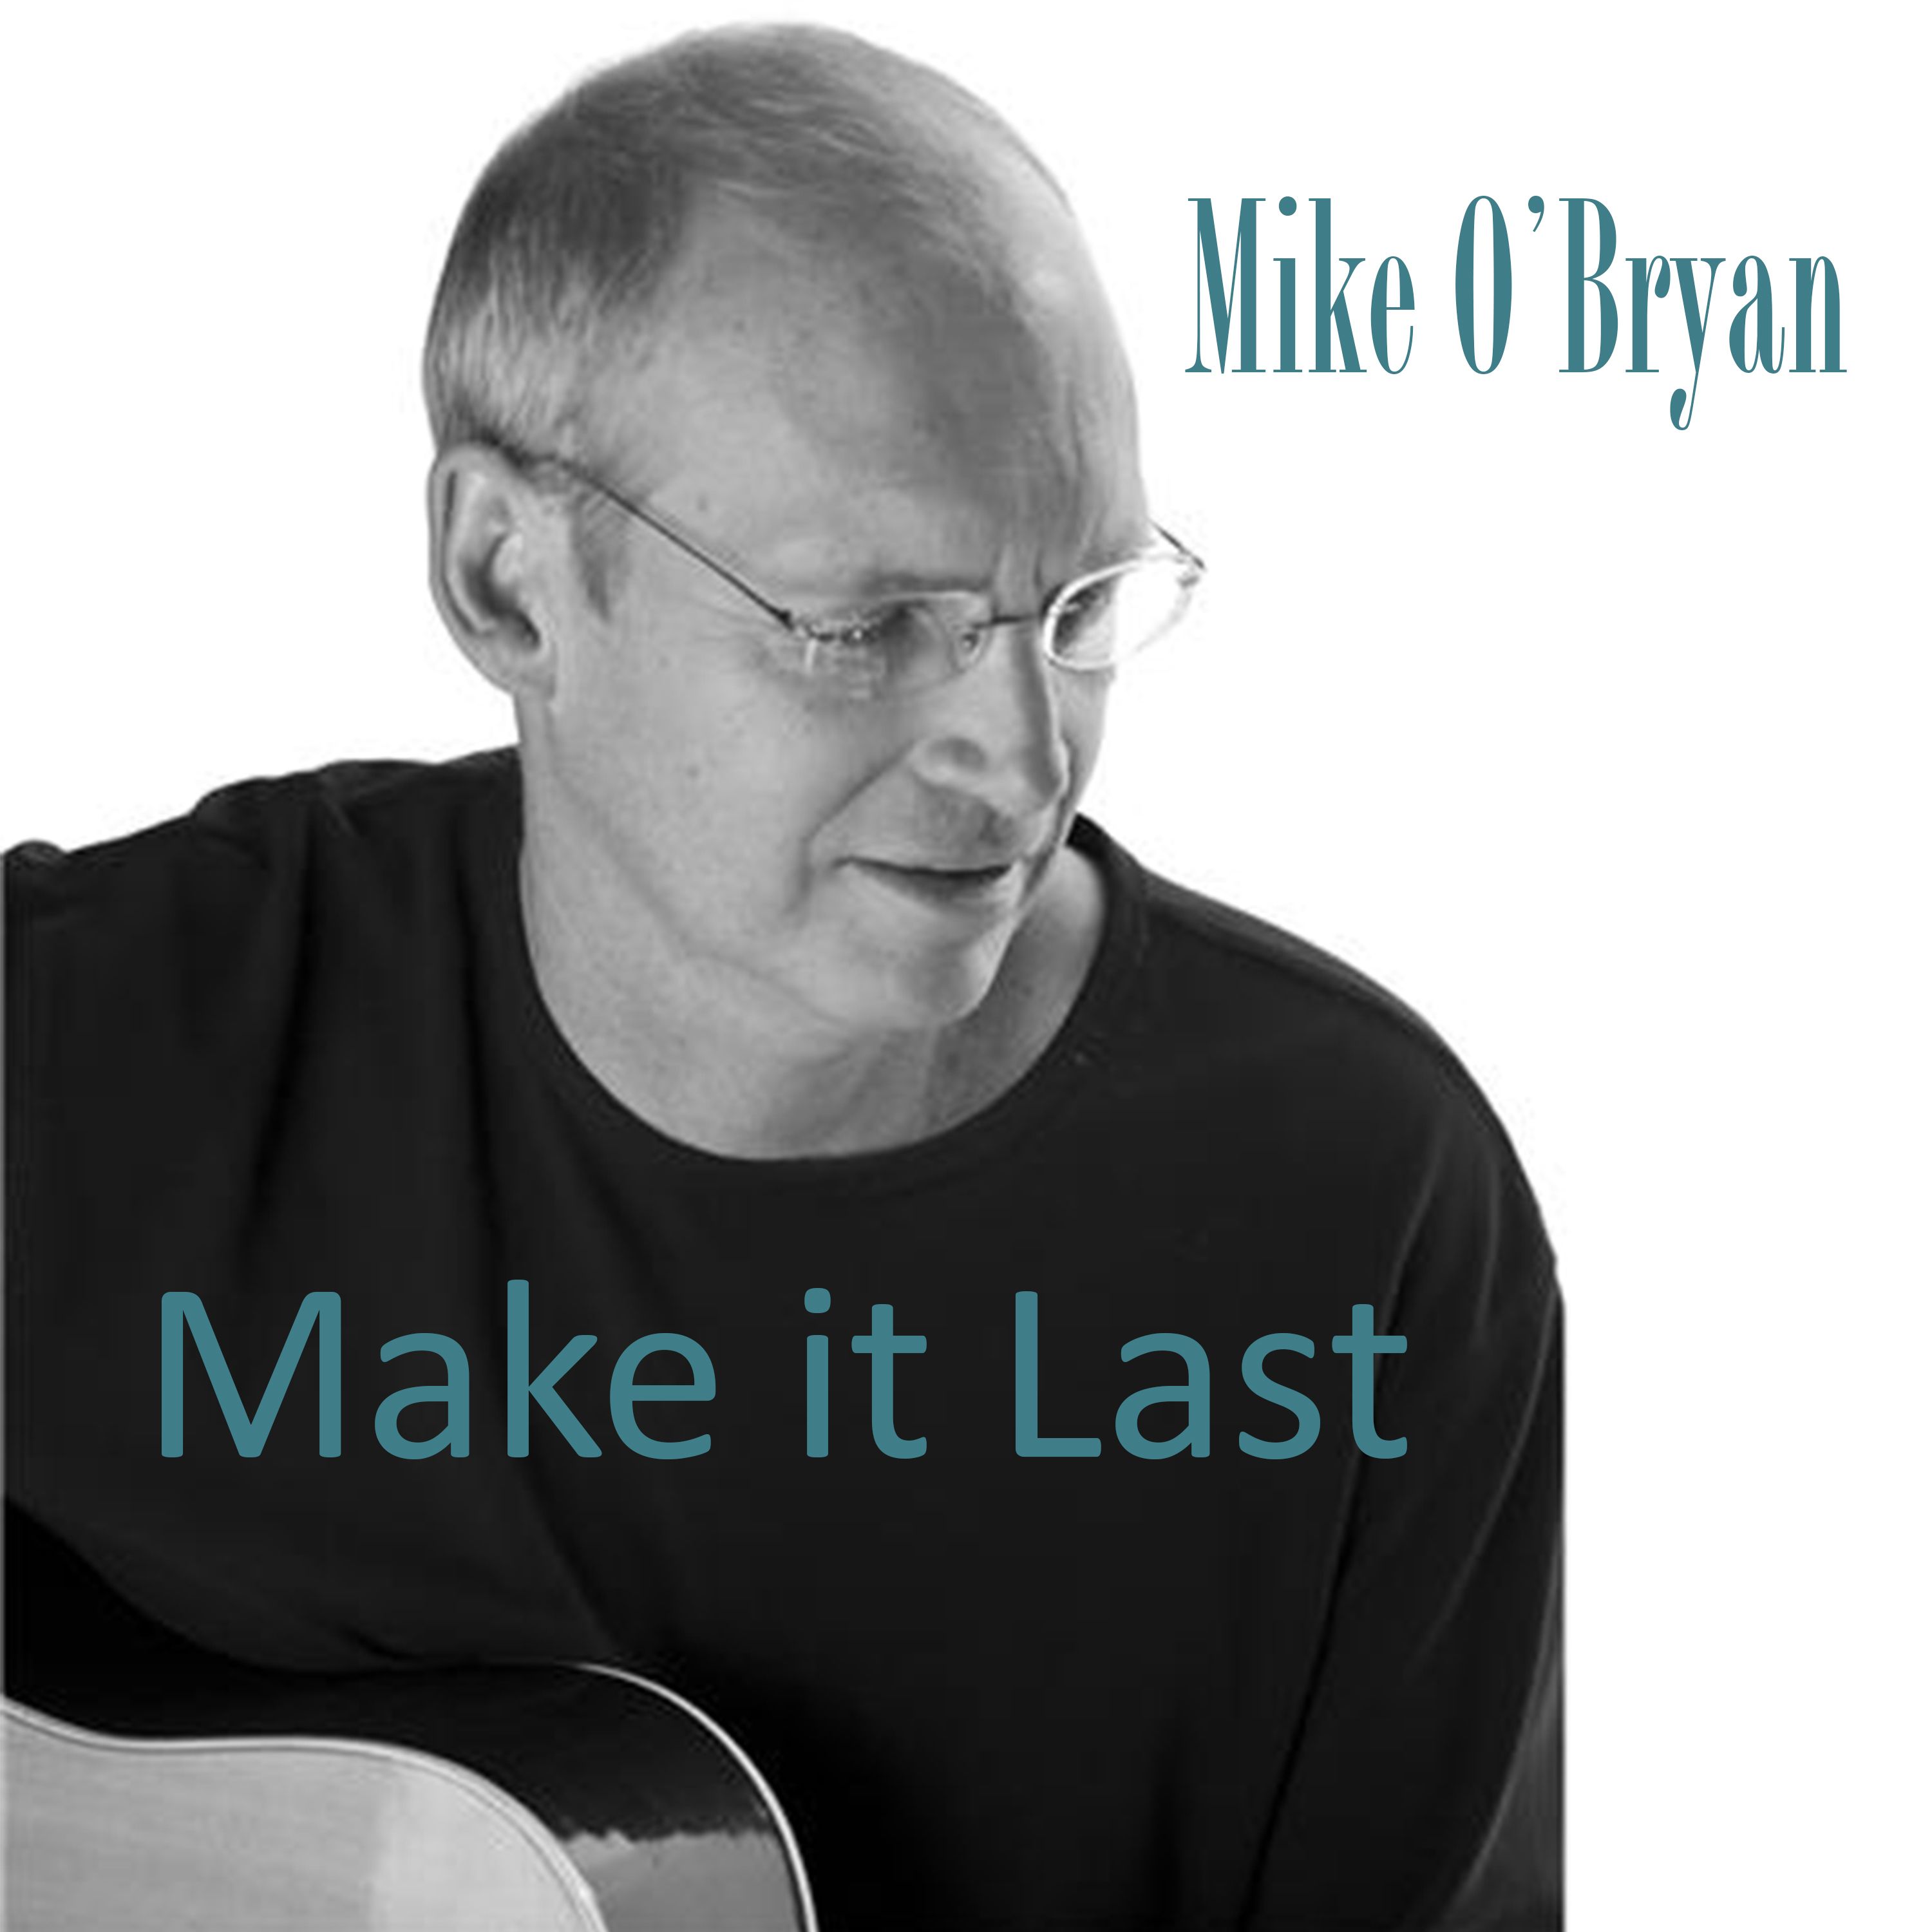 Mike O'Bryan